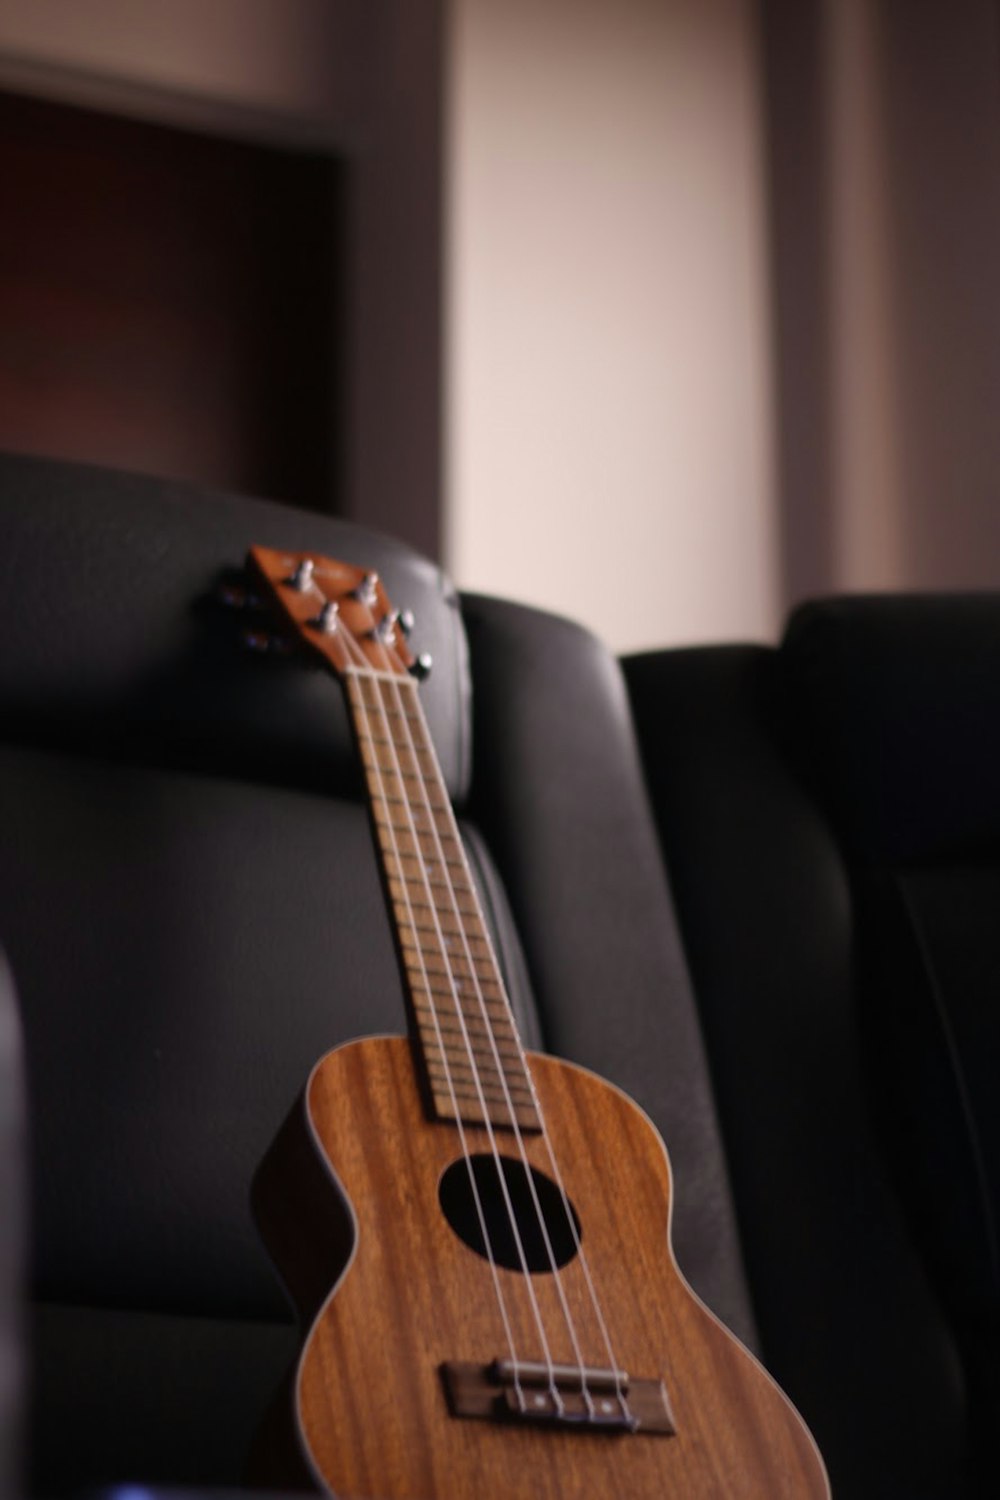 chitarra acustica marrone su divano nero